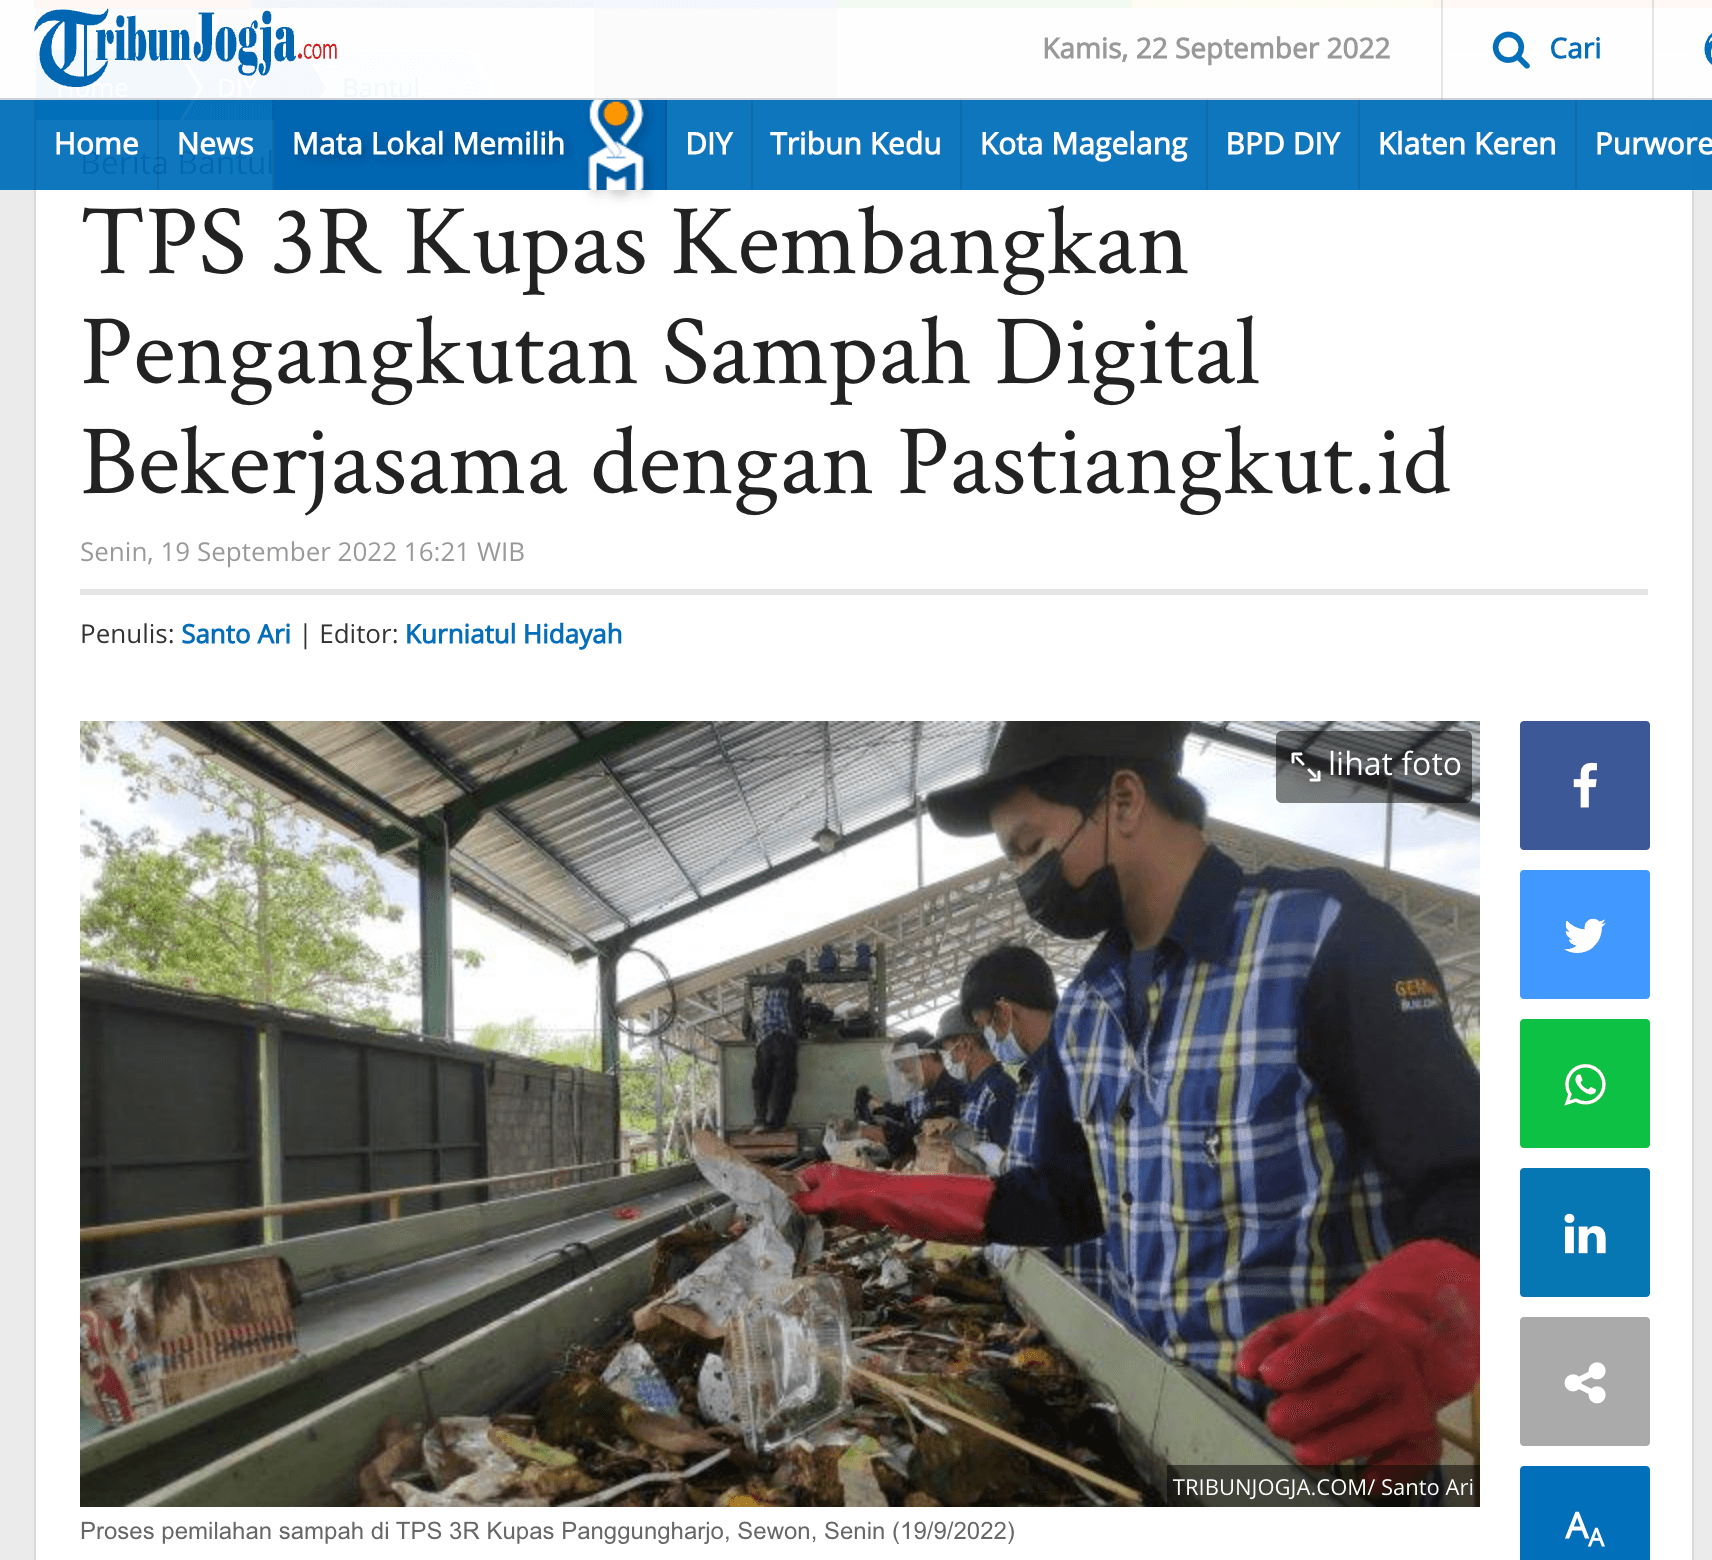 TPS 3R Kupas Kembangkan Pengangkutan Sampah Digital Bekerjasama dengan Pastiangkut.id | Pasti Angkut